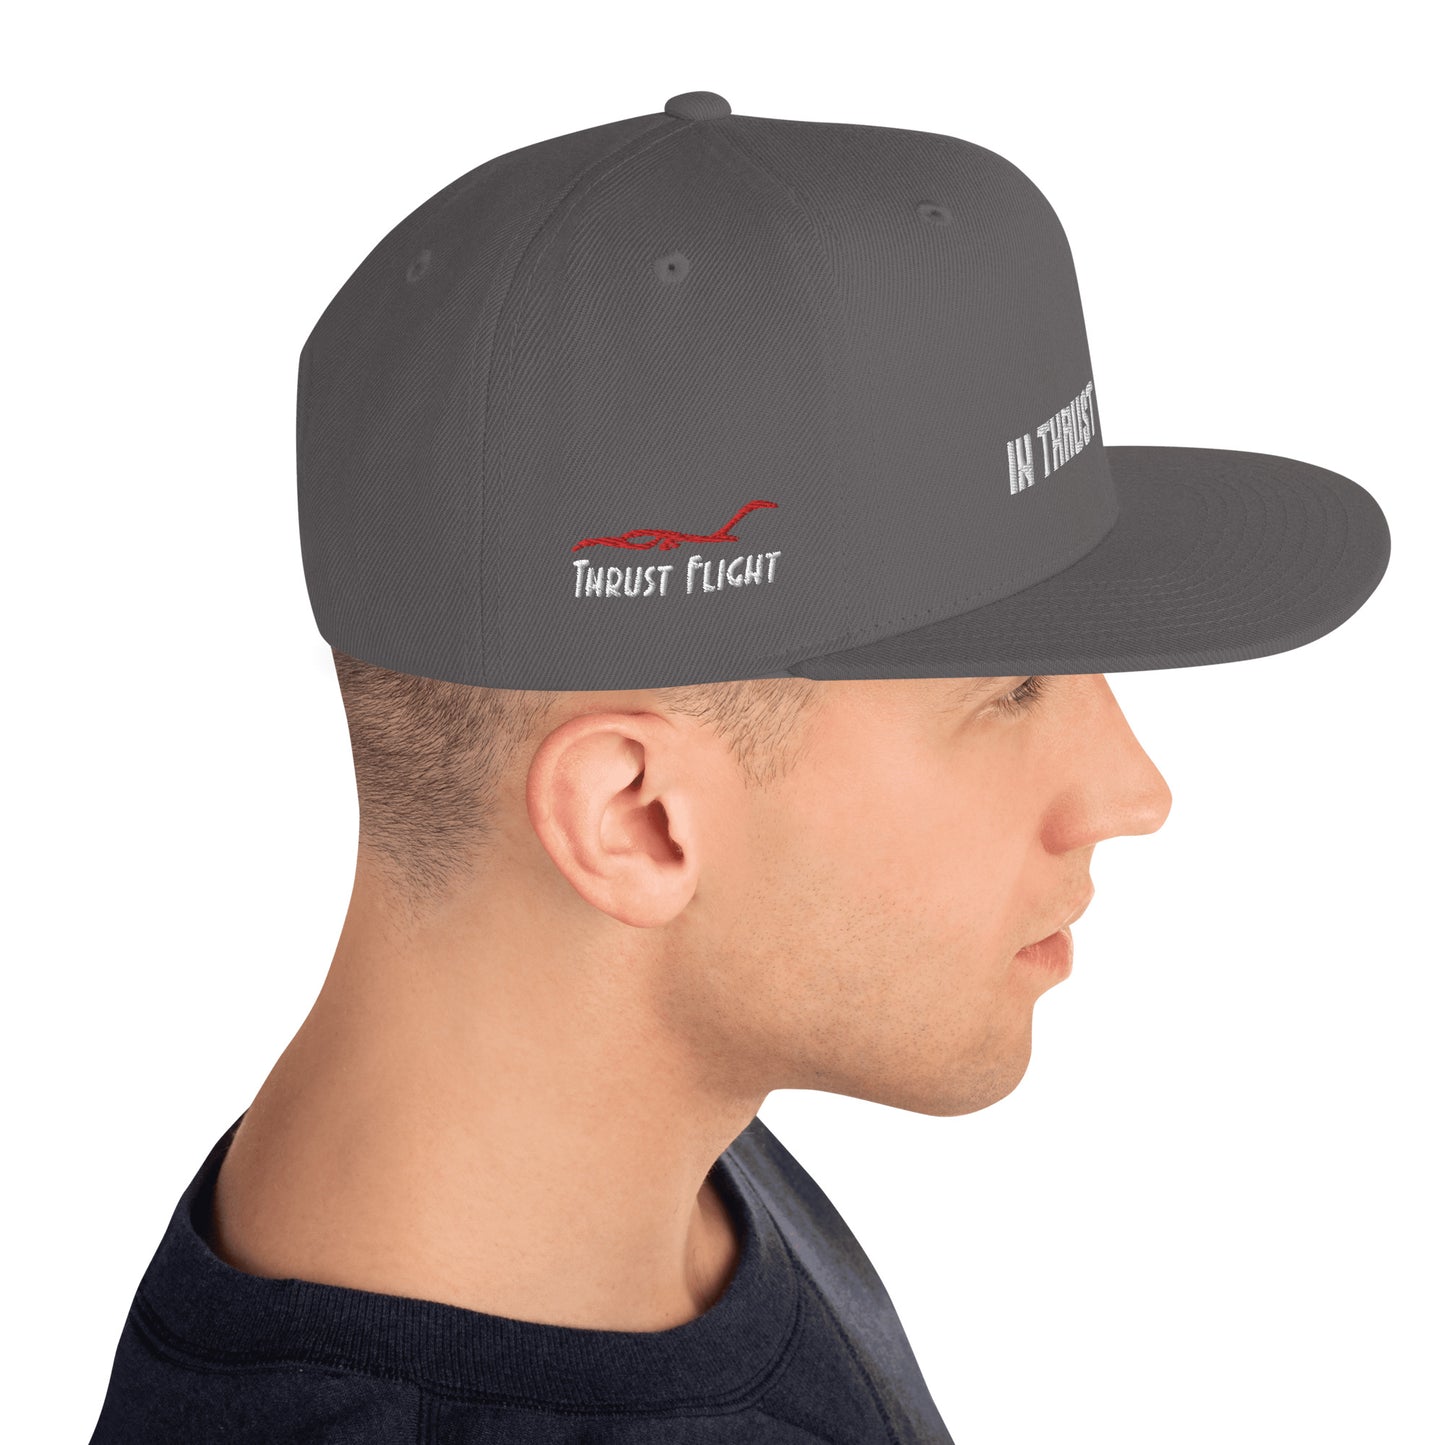 In Thrust We Trust Snapback Hat